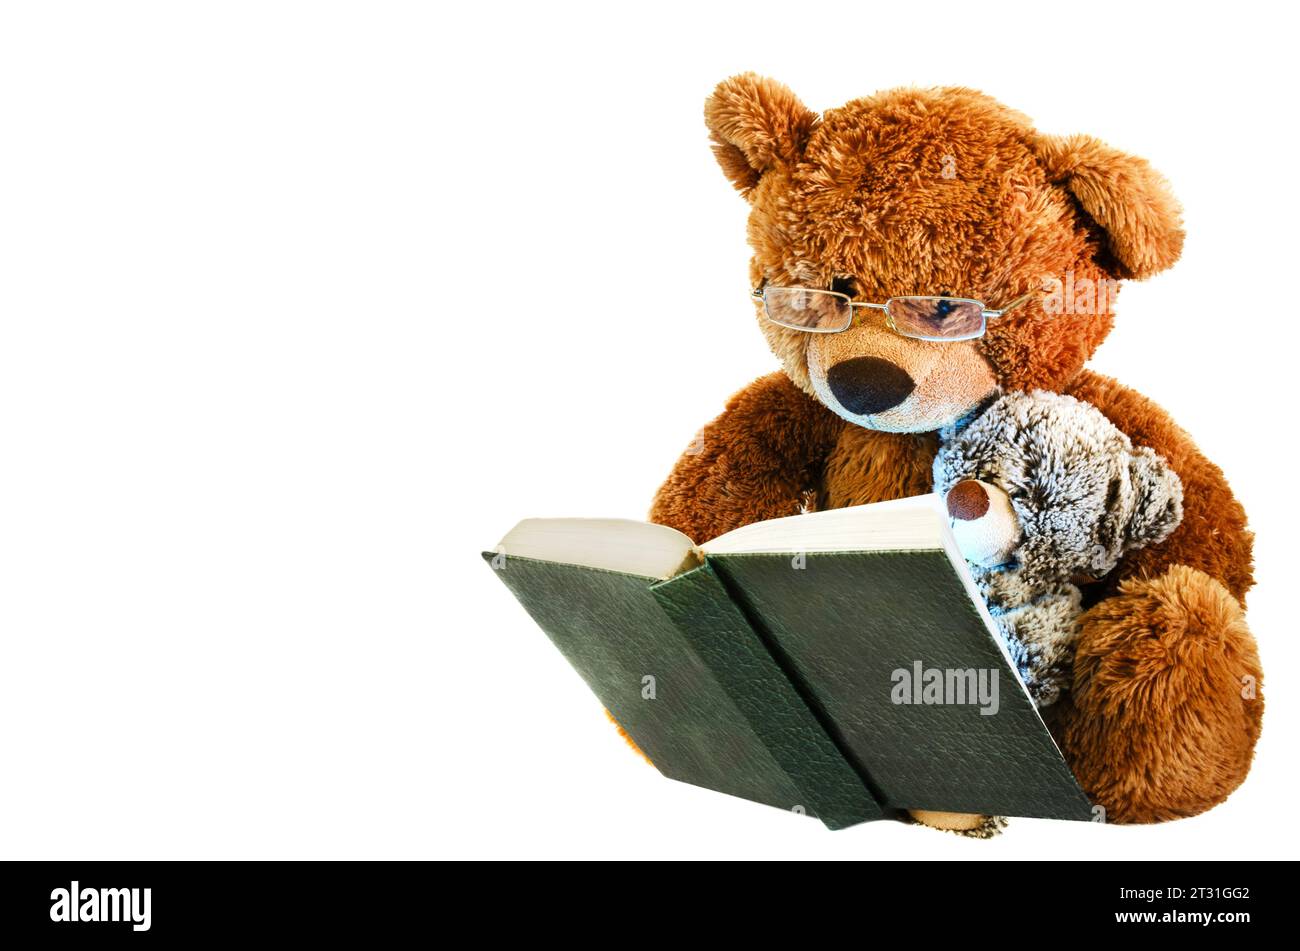 Das ist ein Foto von einem Teddybären mit Brille und einem kleinen Bären, der ein Buch liest. Er hat braunes Fell. Das Buch ist grün mit weißen Seiten. Hintergrund weiß Stockfoto